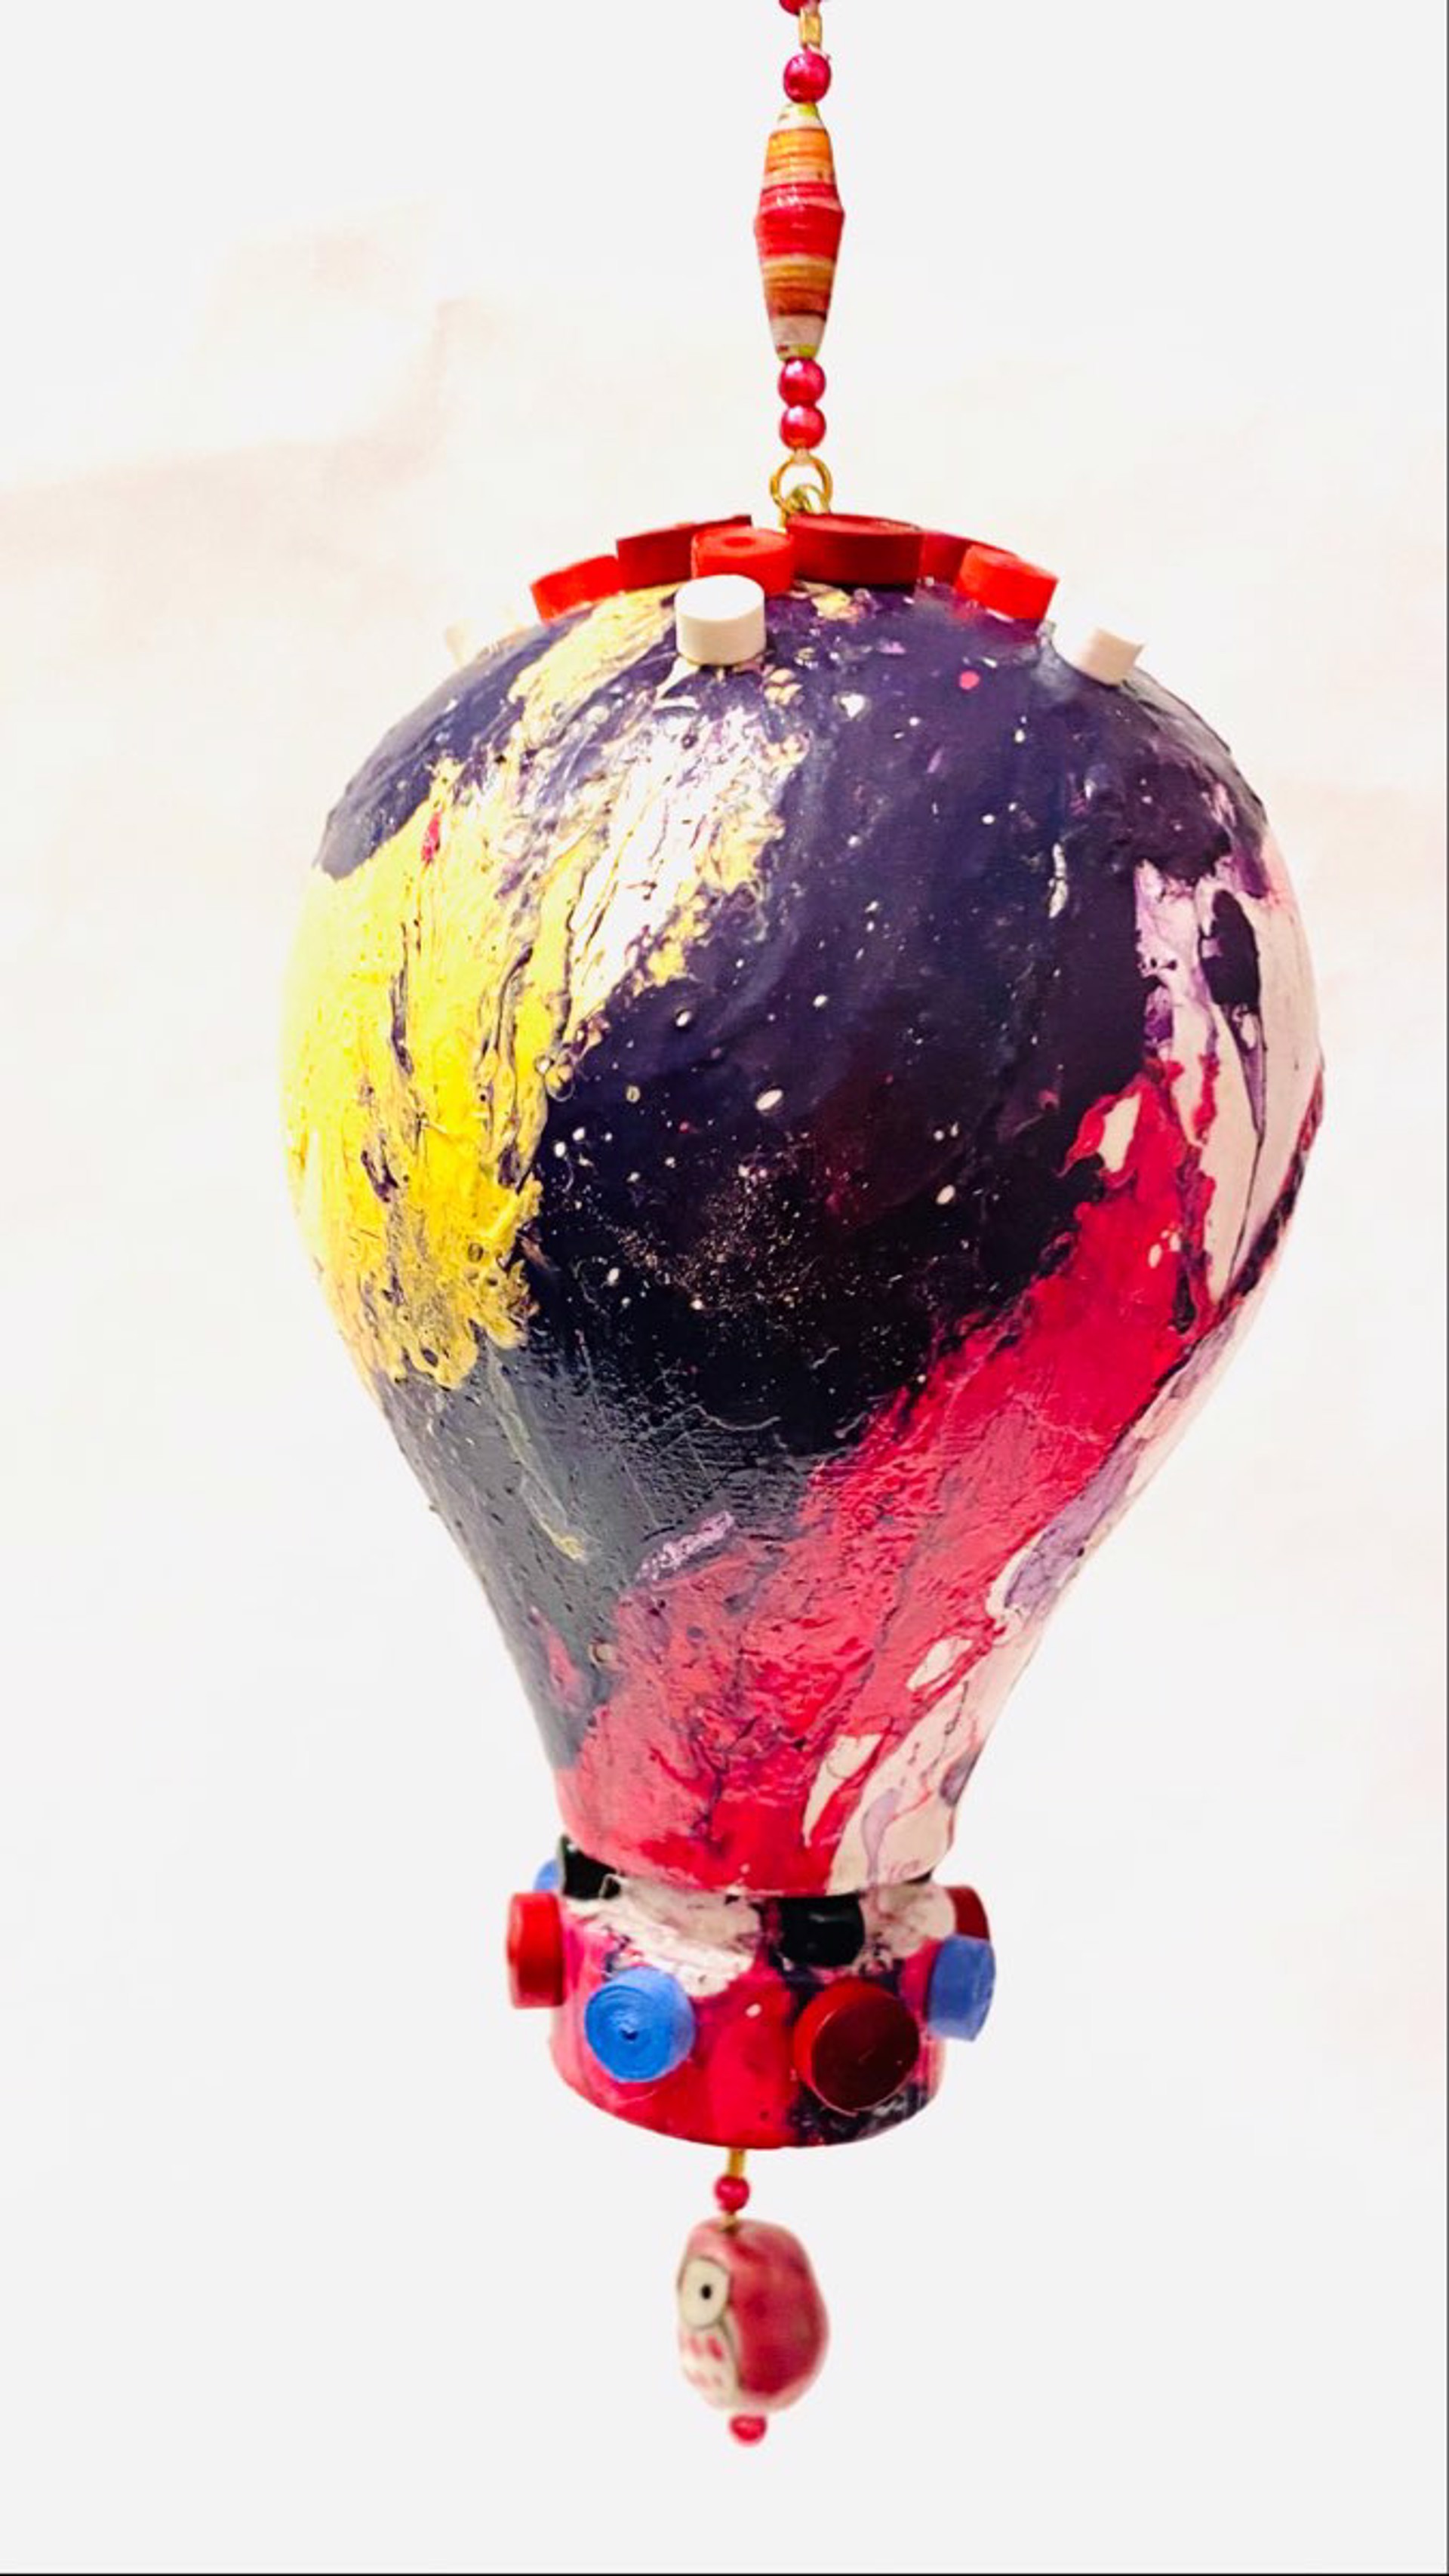 MT22-46 Whimsical Hot Air Balloon Ornament by Marc Tannenbaum